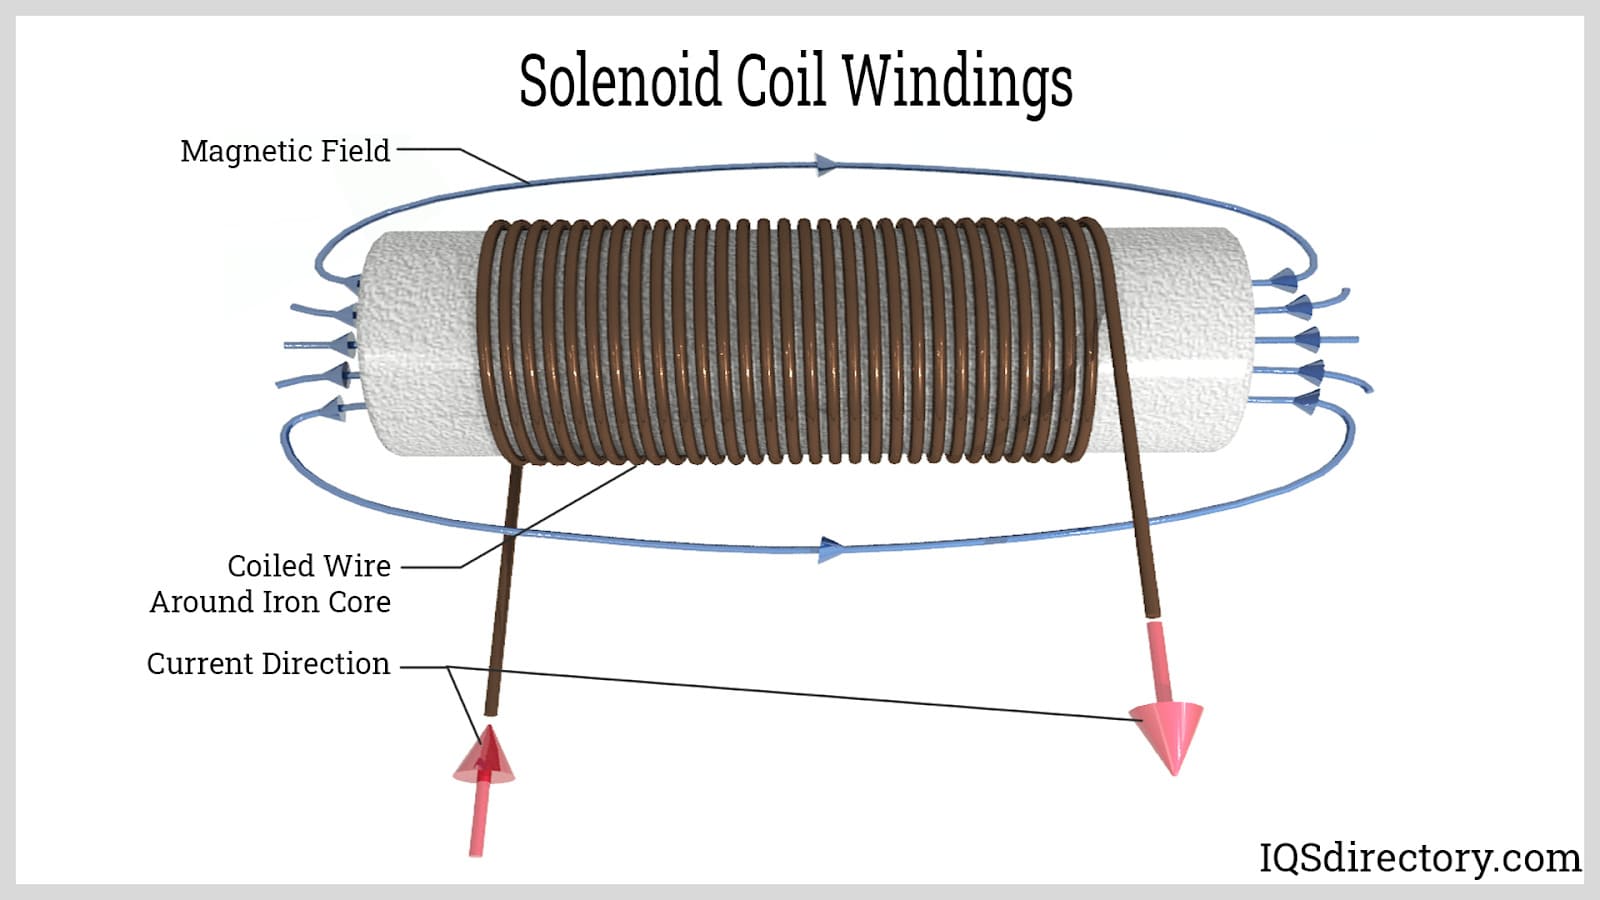 Solenoid Coil Windings